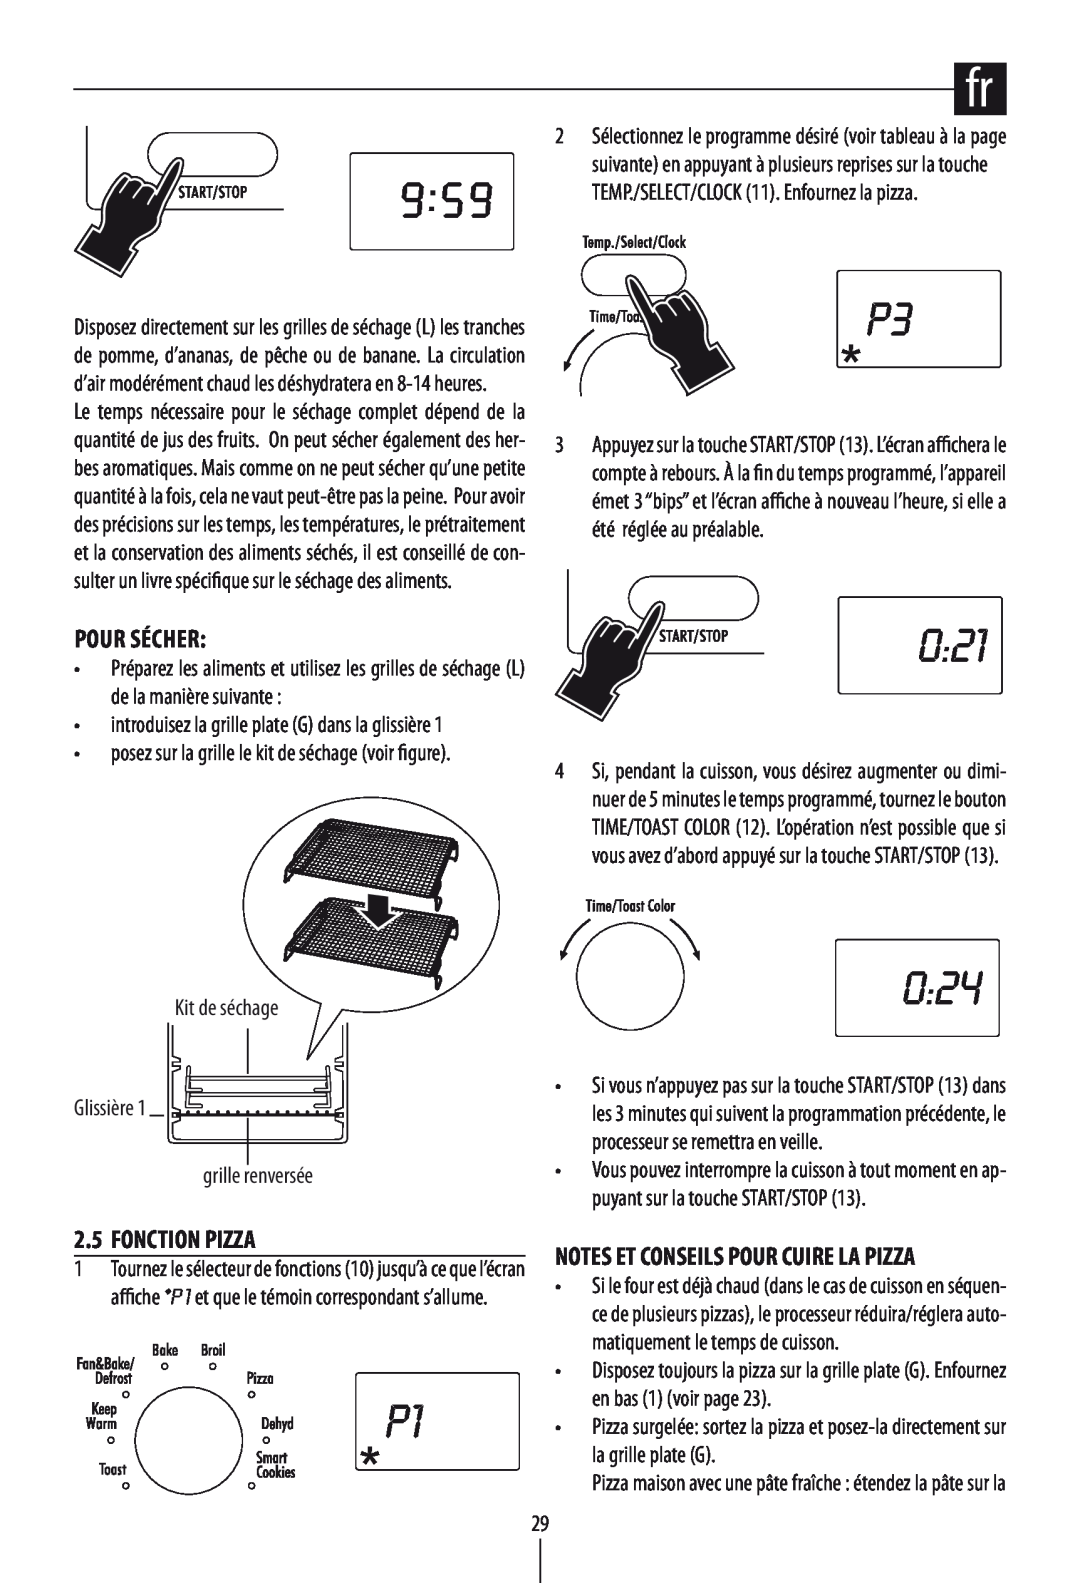 DeLonghi DO1289 manual Pour Sécher, Fonction Pizza, 0:21, 0:24, Notes Et Conseils Pour Cuire La Pizza 